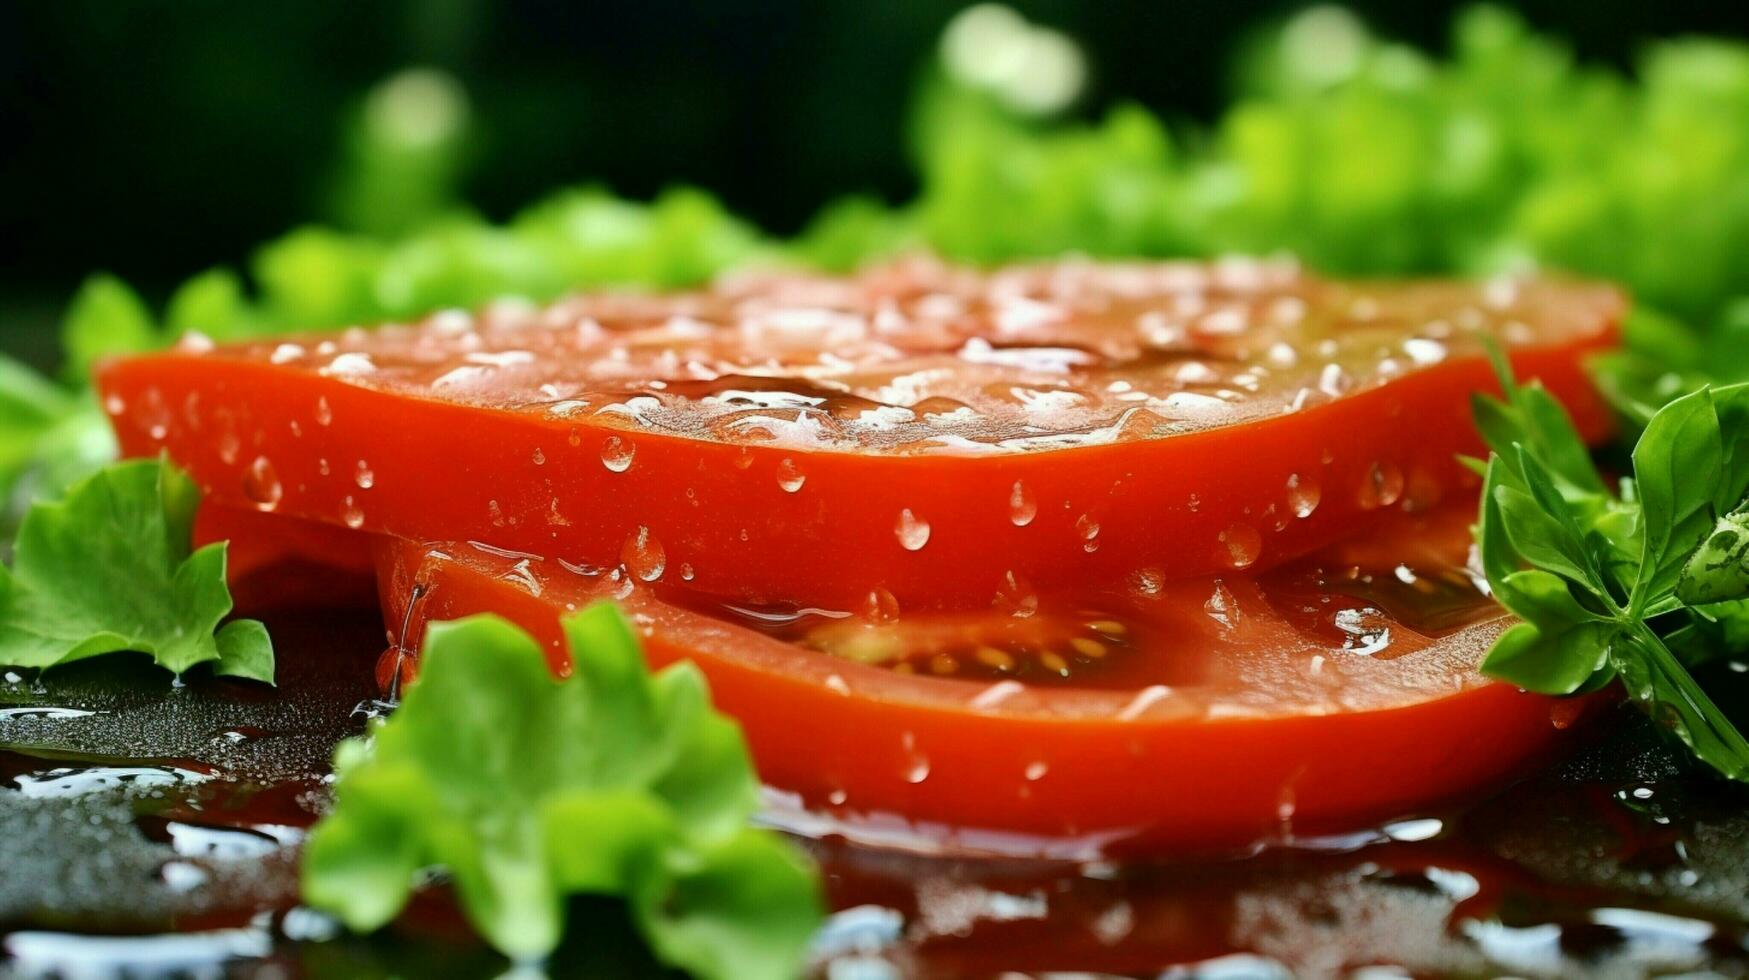 Frais mûr tomate tranche sur vert feuille une gourmet été photo